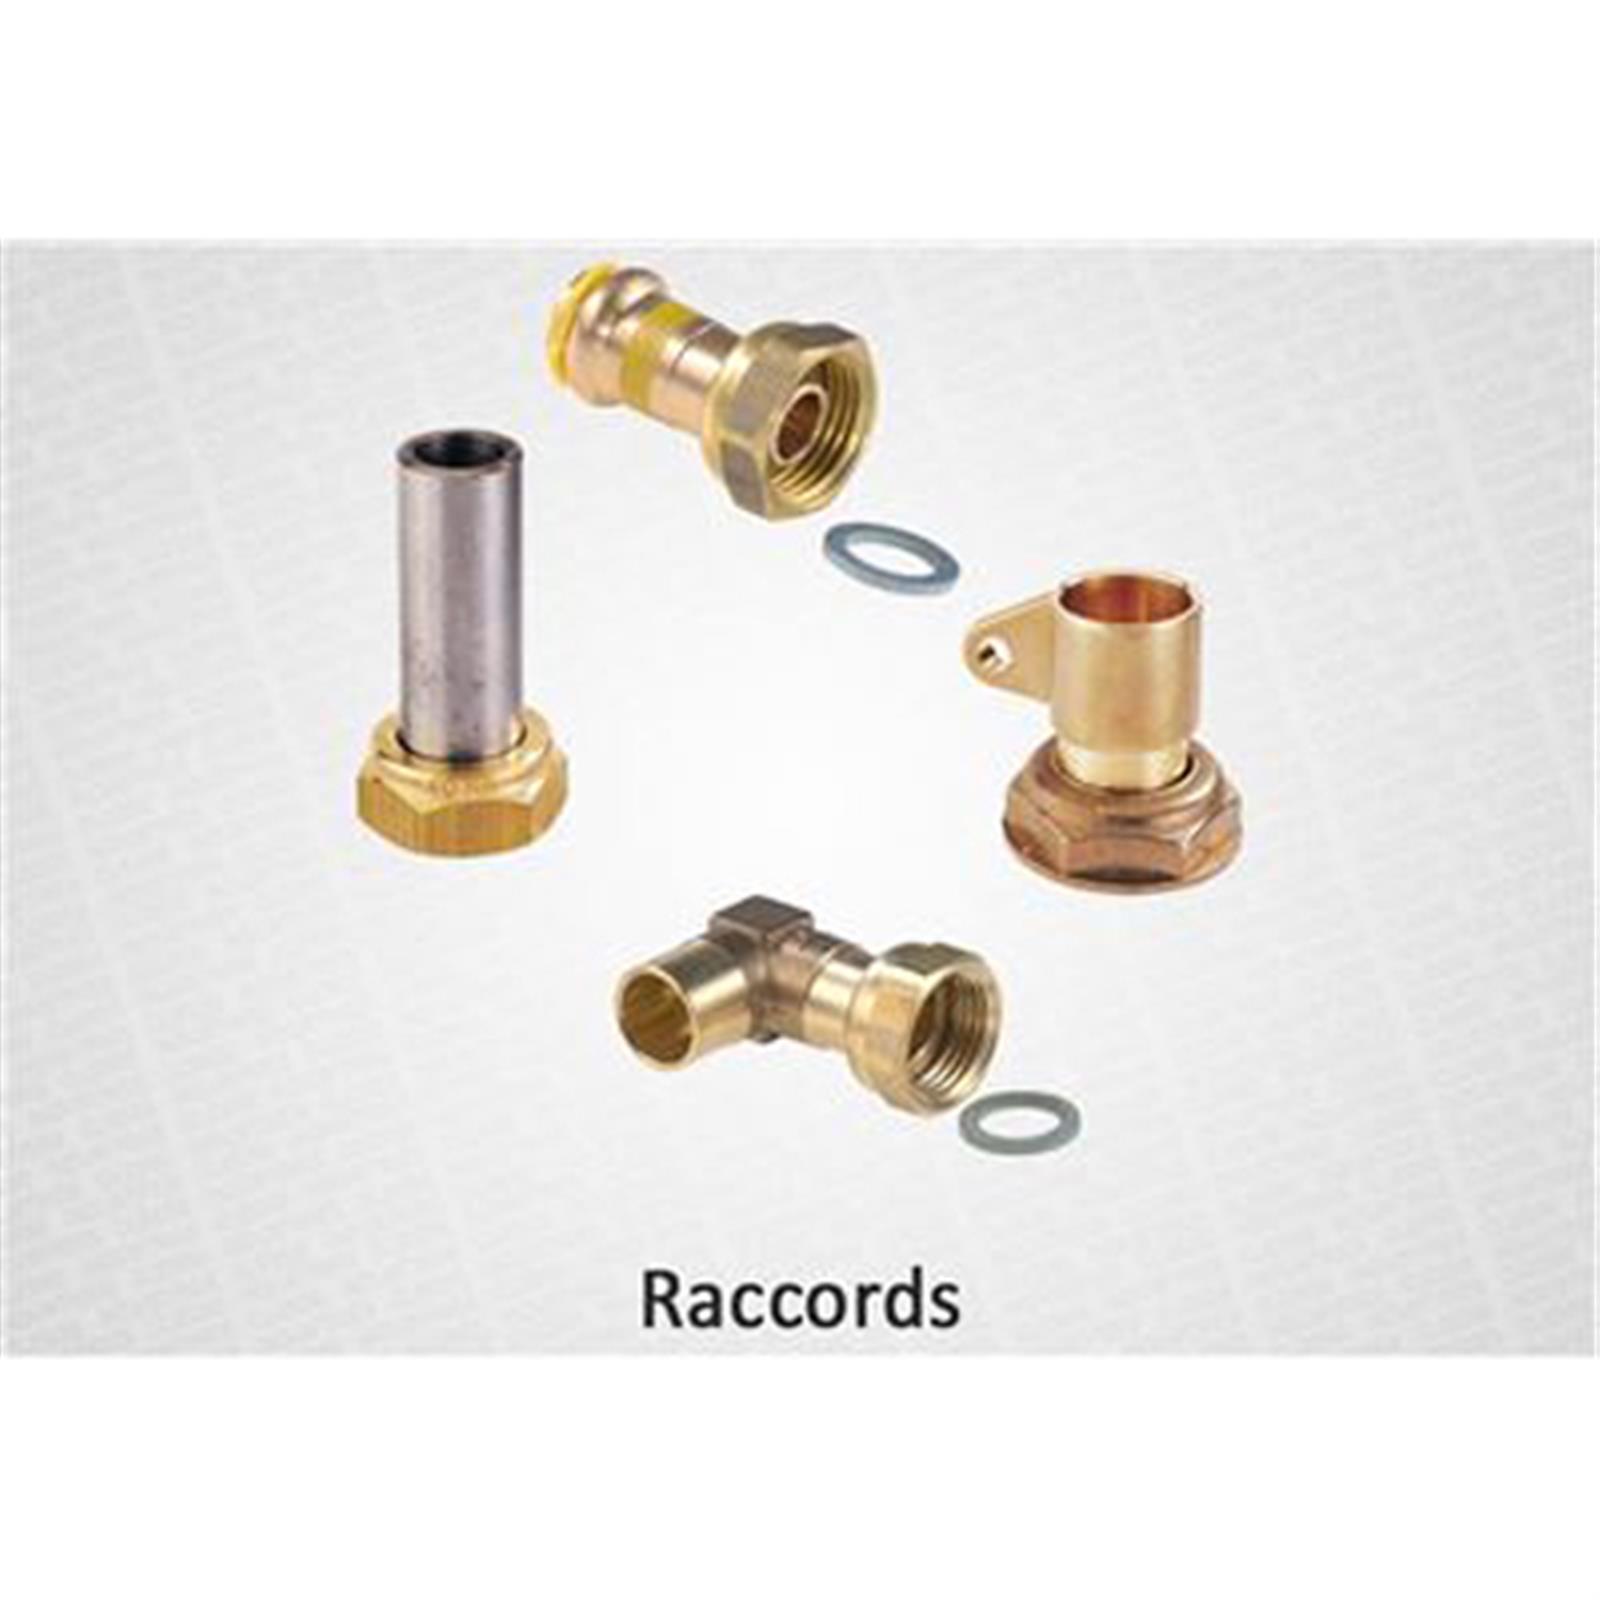 Raccords, bouchons, écrous pour gaz butane et propane - Raccord P45-41 - sous coque